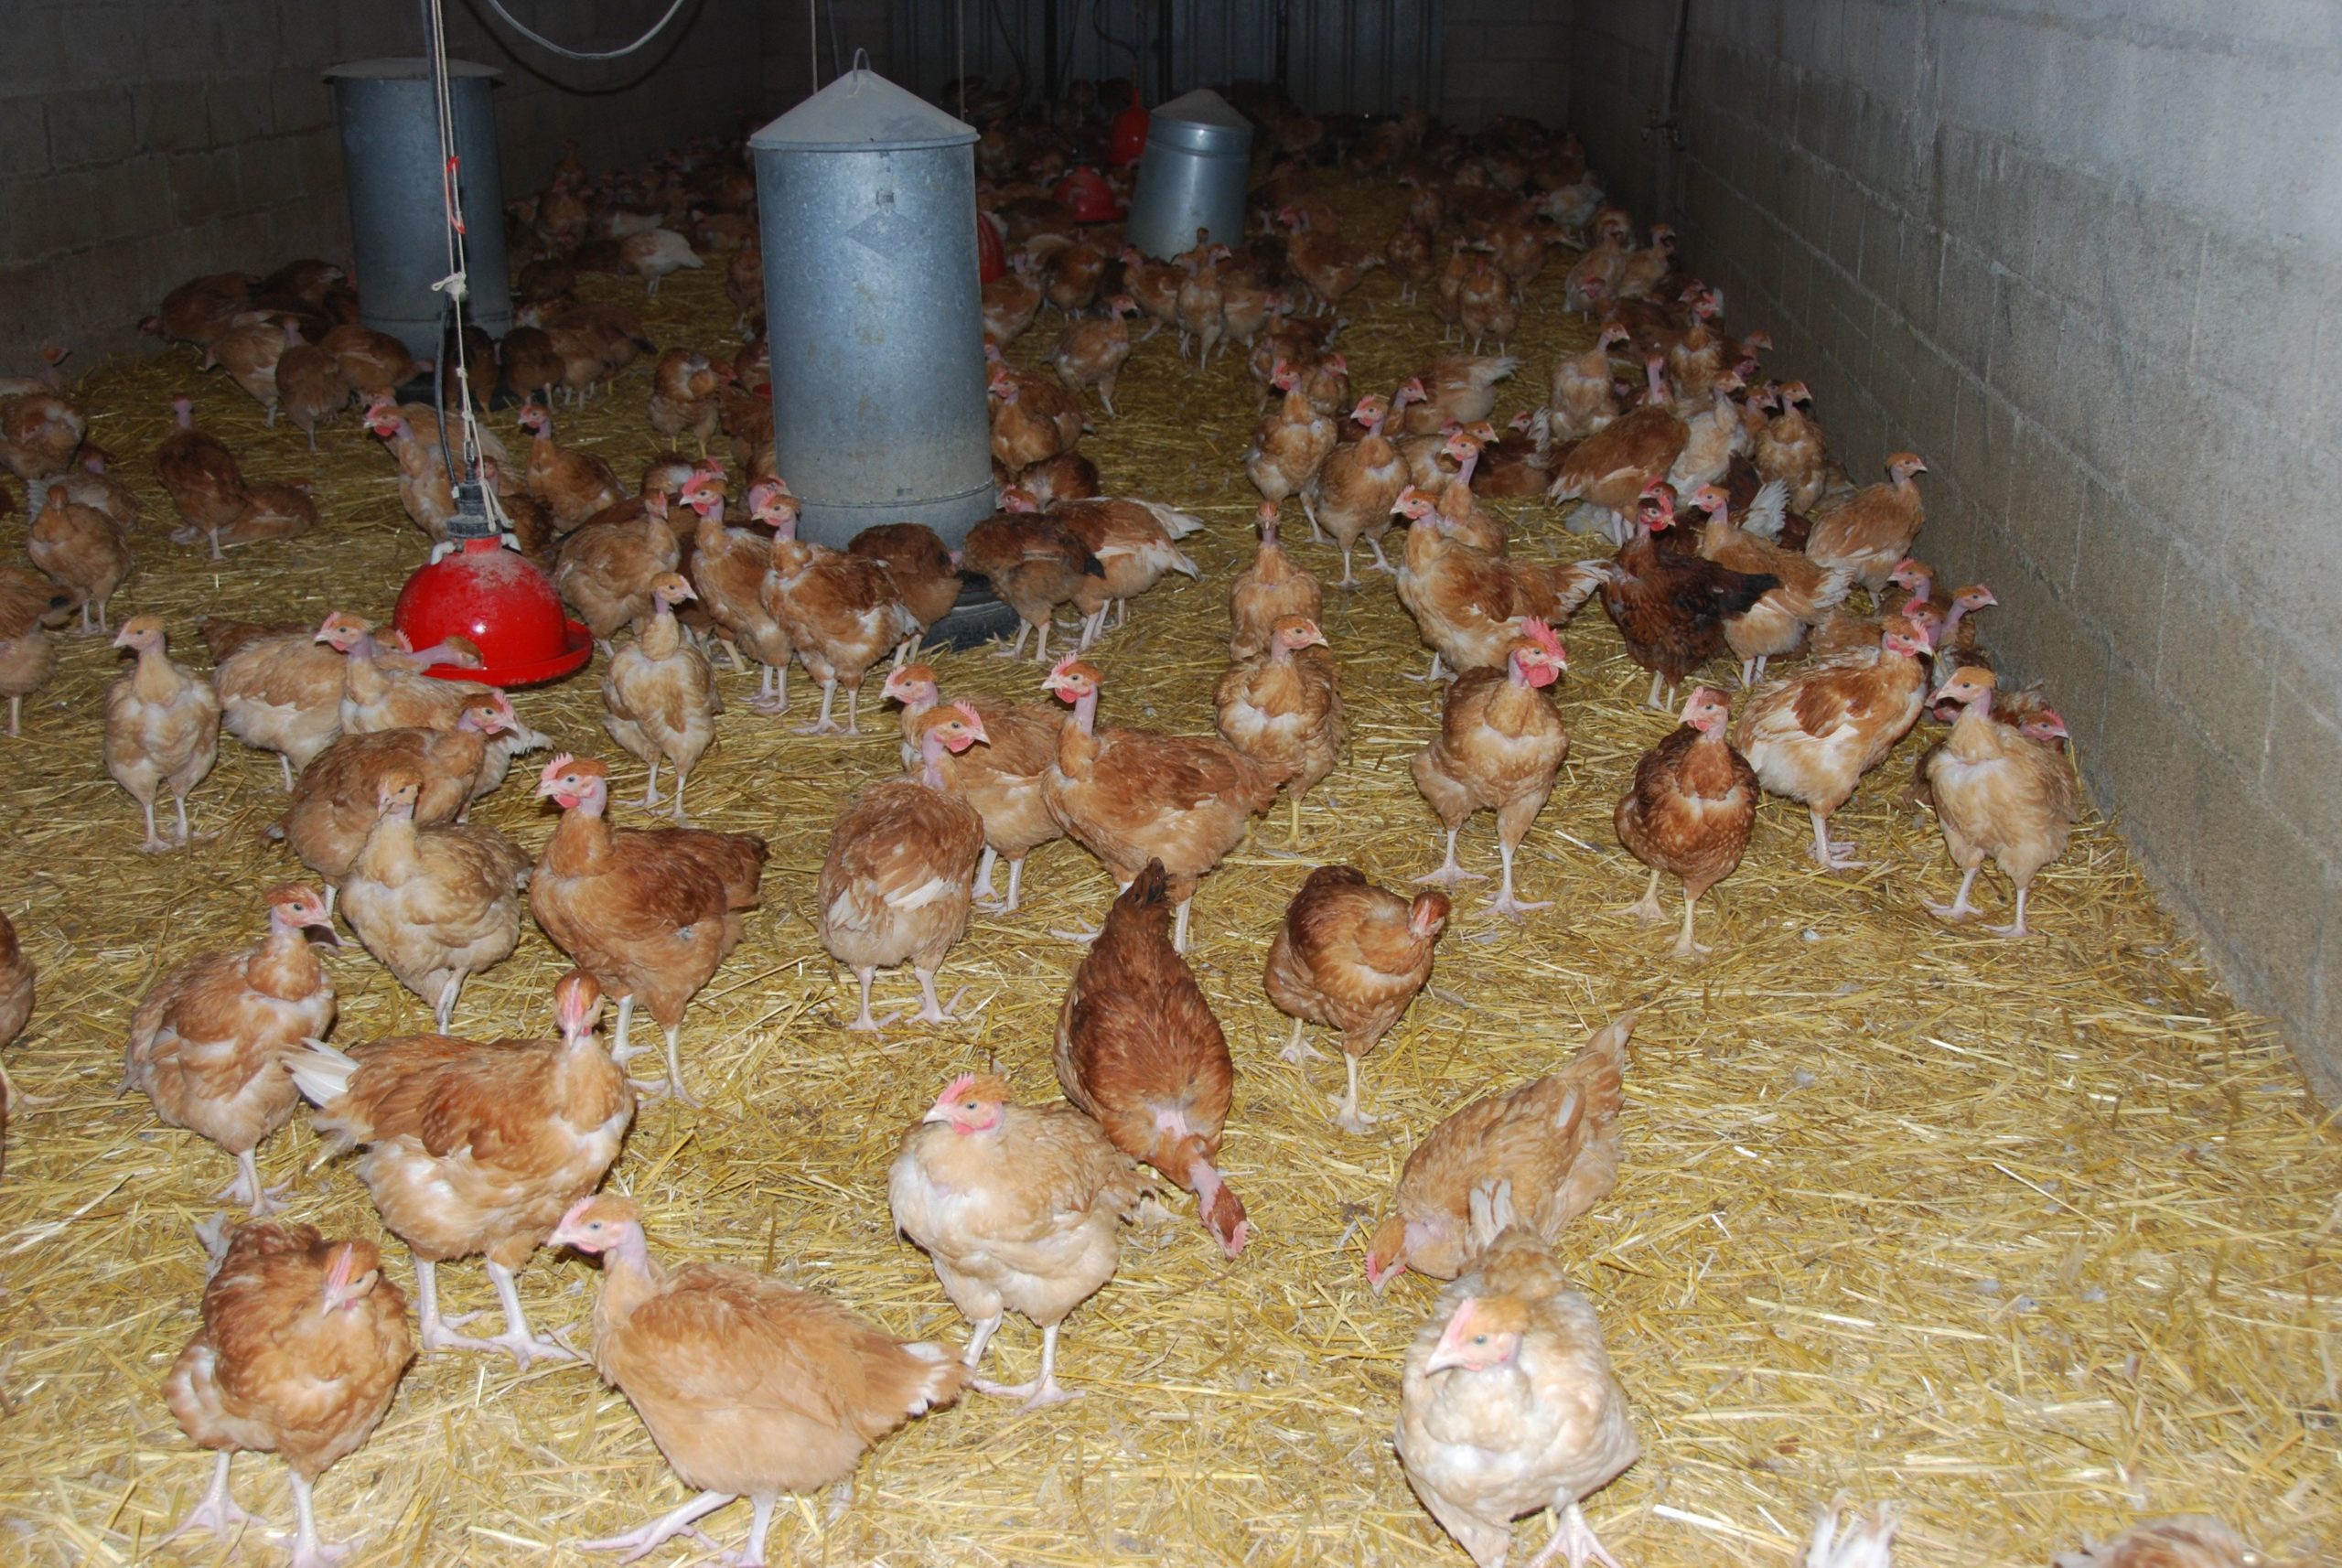 Lire la suite à propos de l’article Influenza aviaire : la Seine-et-Marne et plus globalement la France passent en risque élevé